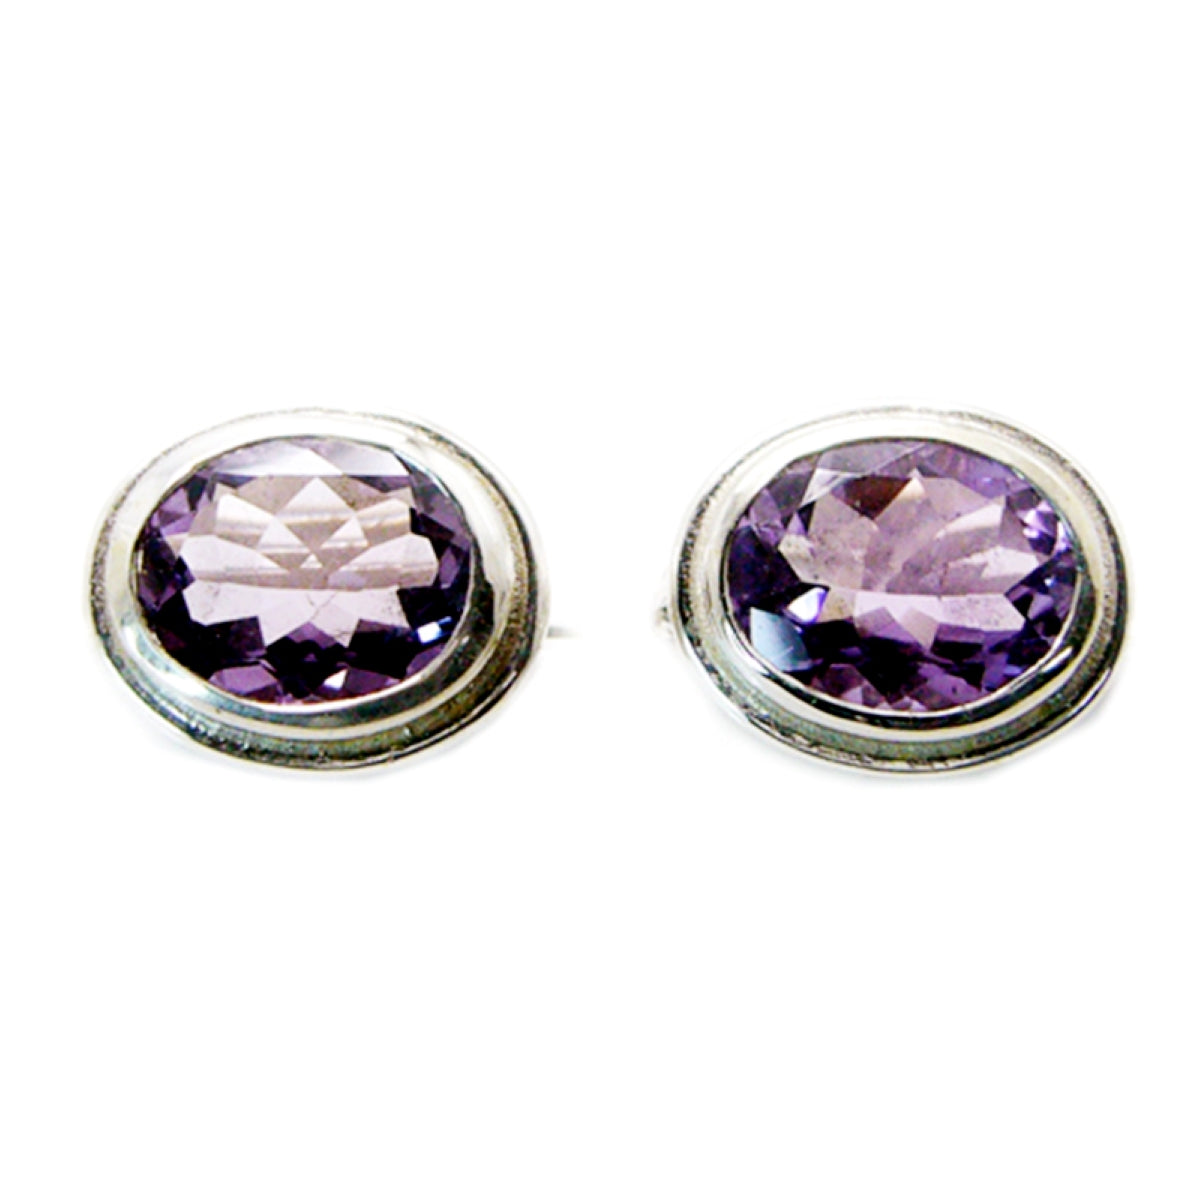 Riyo Real Gemstones oval Faceted Purple Amethyst Silver Earrings graduation gift